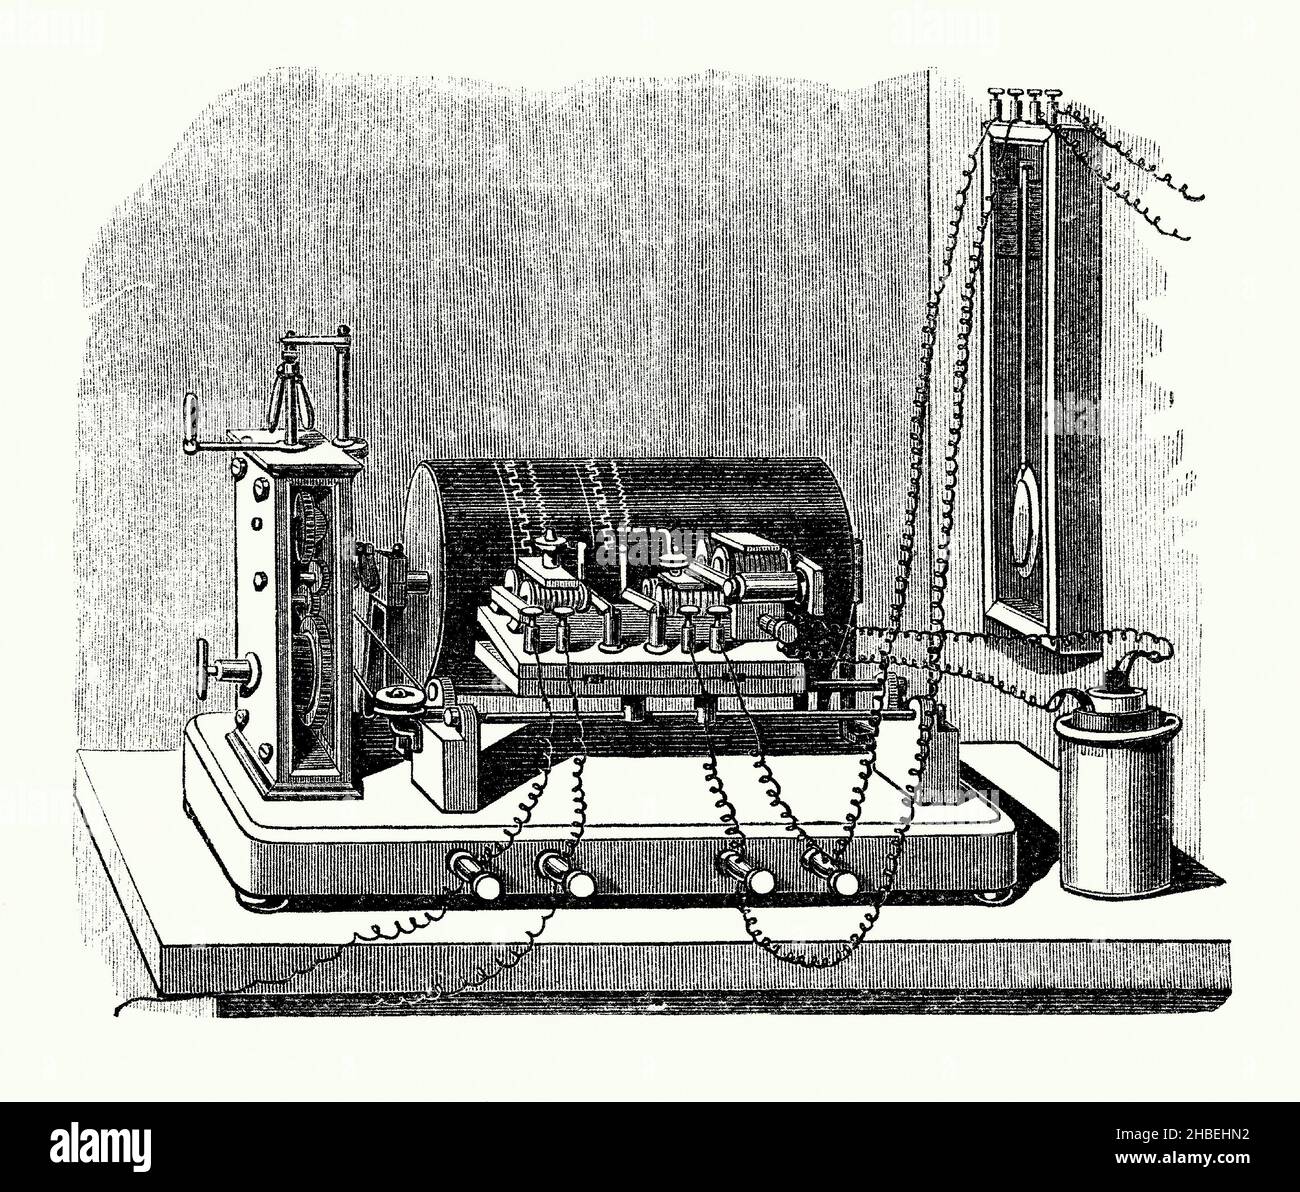 Un antiguo grabado de un dispositivo de grabación cronógrafo eléctrico de mediados de 1800s. Es de un libro victoriano de los 1890s sobre descubrimientos e invenciones durante el 1800s. Un cronógrafo es un tipo de reloj o reloj. Louis Moinet inventó el cronógrafo en 1816 para su uso en el seguimiento de objetos astronómicos. Fue desarrollado por Francis Bashforth y John Locke. El aparato de grabación que se muestra aquí es similar al Electro-Chronograph de John Locke – un cilindro giratorio cubierto de papel y un bolígrafo podrían registrar un evento dentro de centésimas de segundo. Foto de stock